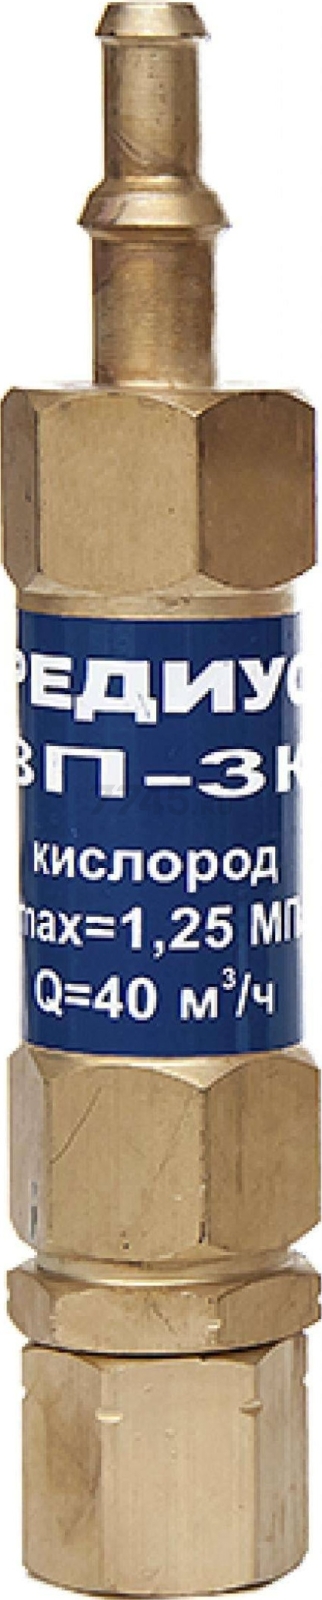 Затвор предохранительный РЕДИУС ЗП -3К-113 (06207)